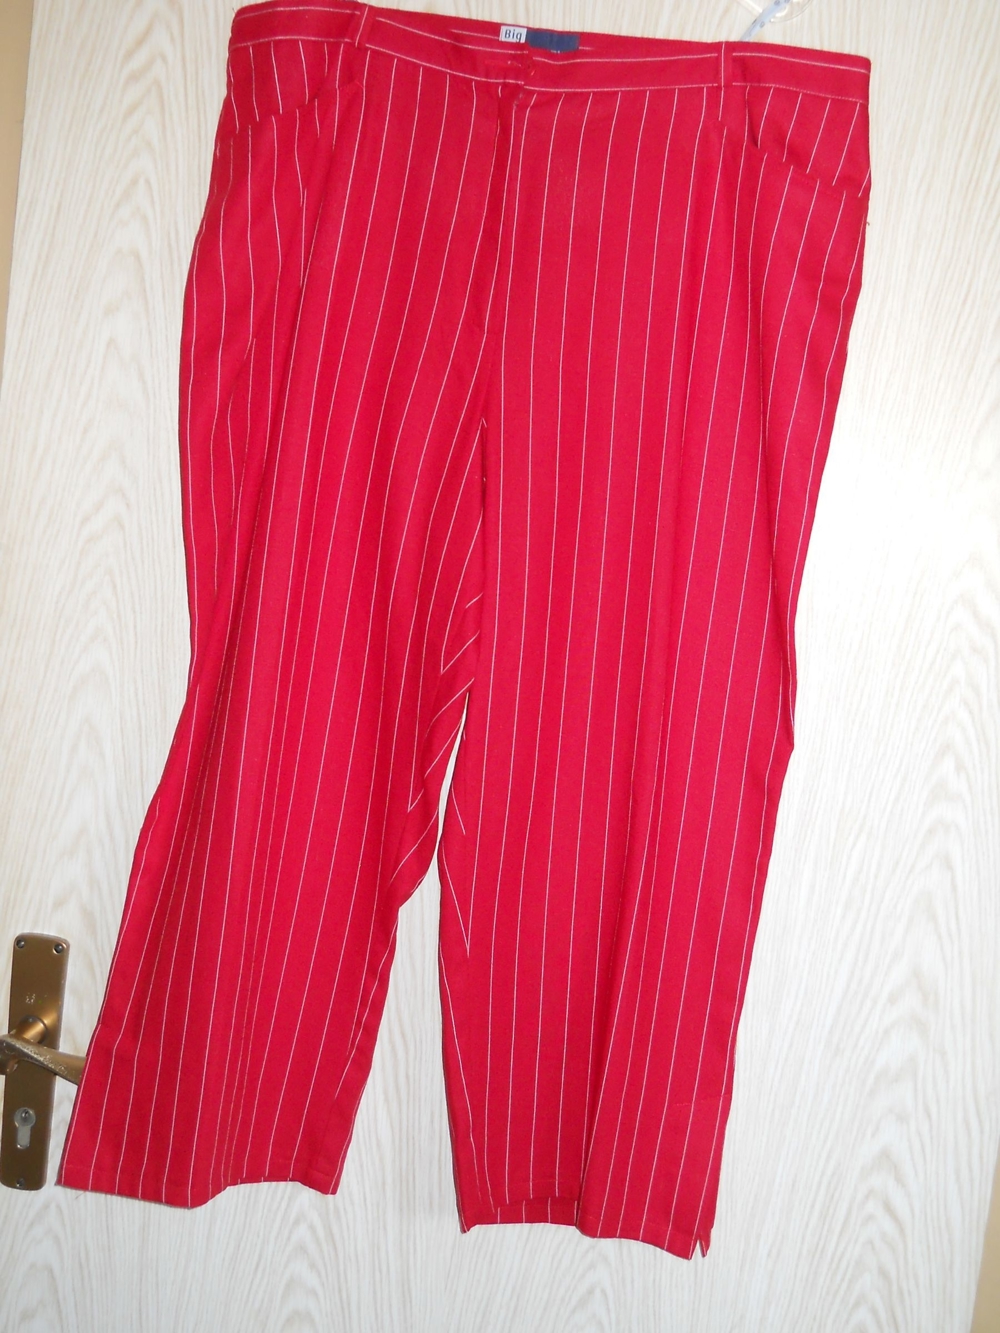 schicke rote Hose - Stiefelhose Gr. 48